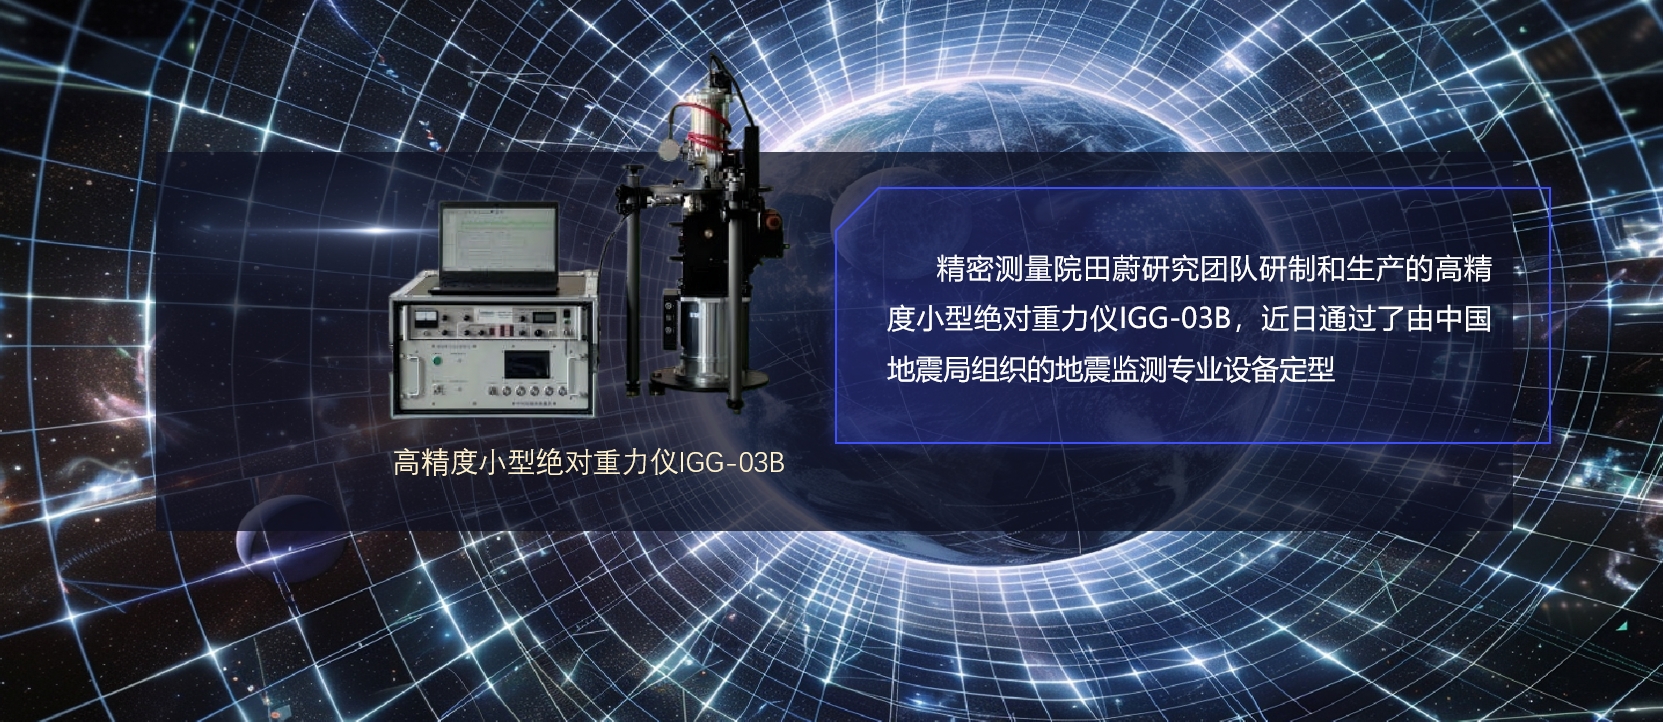 精密测量院生产的高精度小型绝对重力仪IGG-03B通过国家地震监测专业设备定型